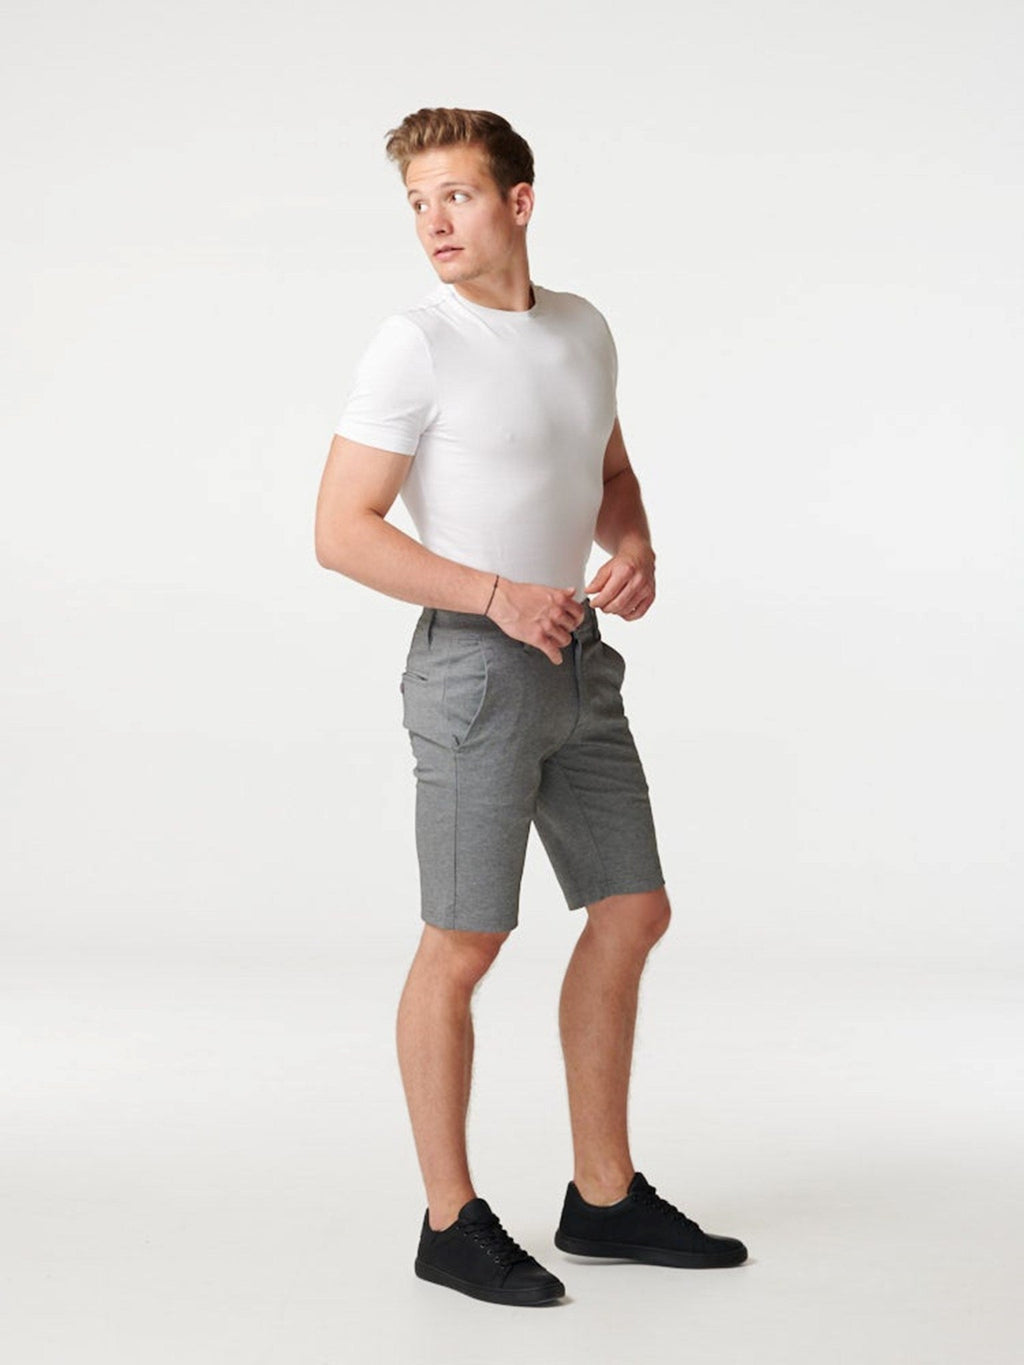 奇诺短裤 - 斑驳的灰色